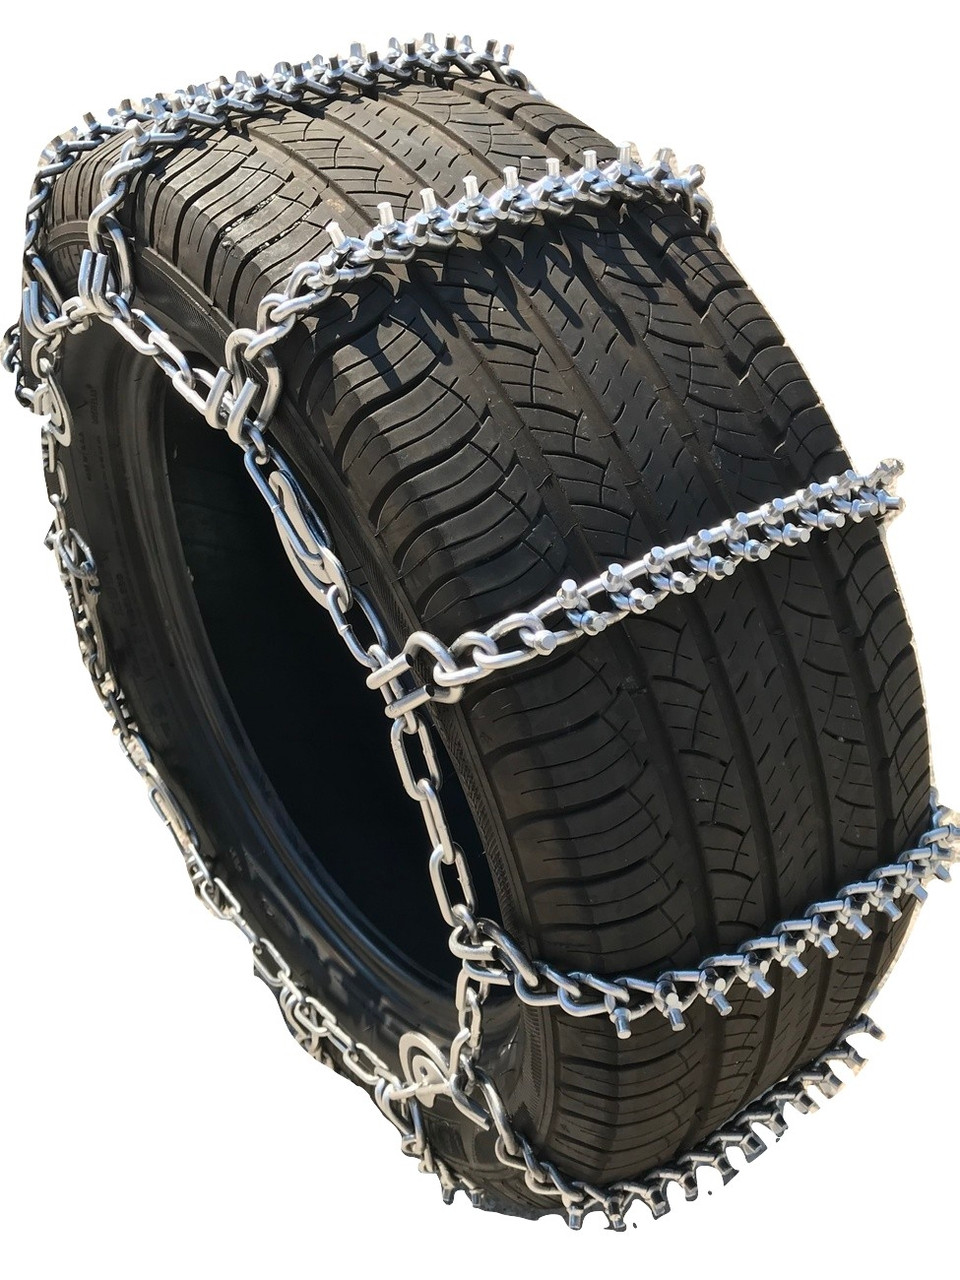 P255/65R17, P255/65 17 Boron ALLOY Cam STUD Tire Chains set of 2